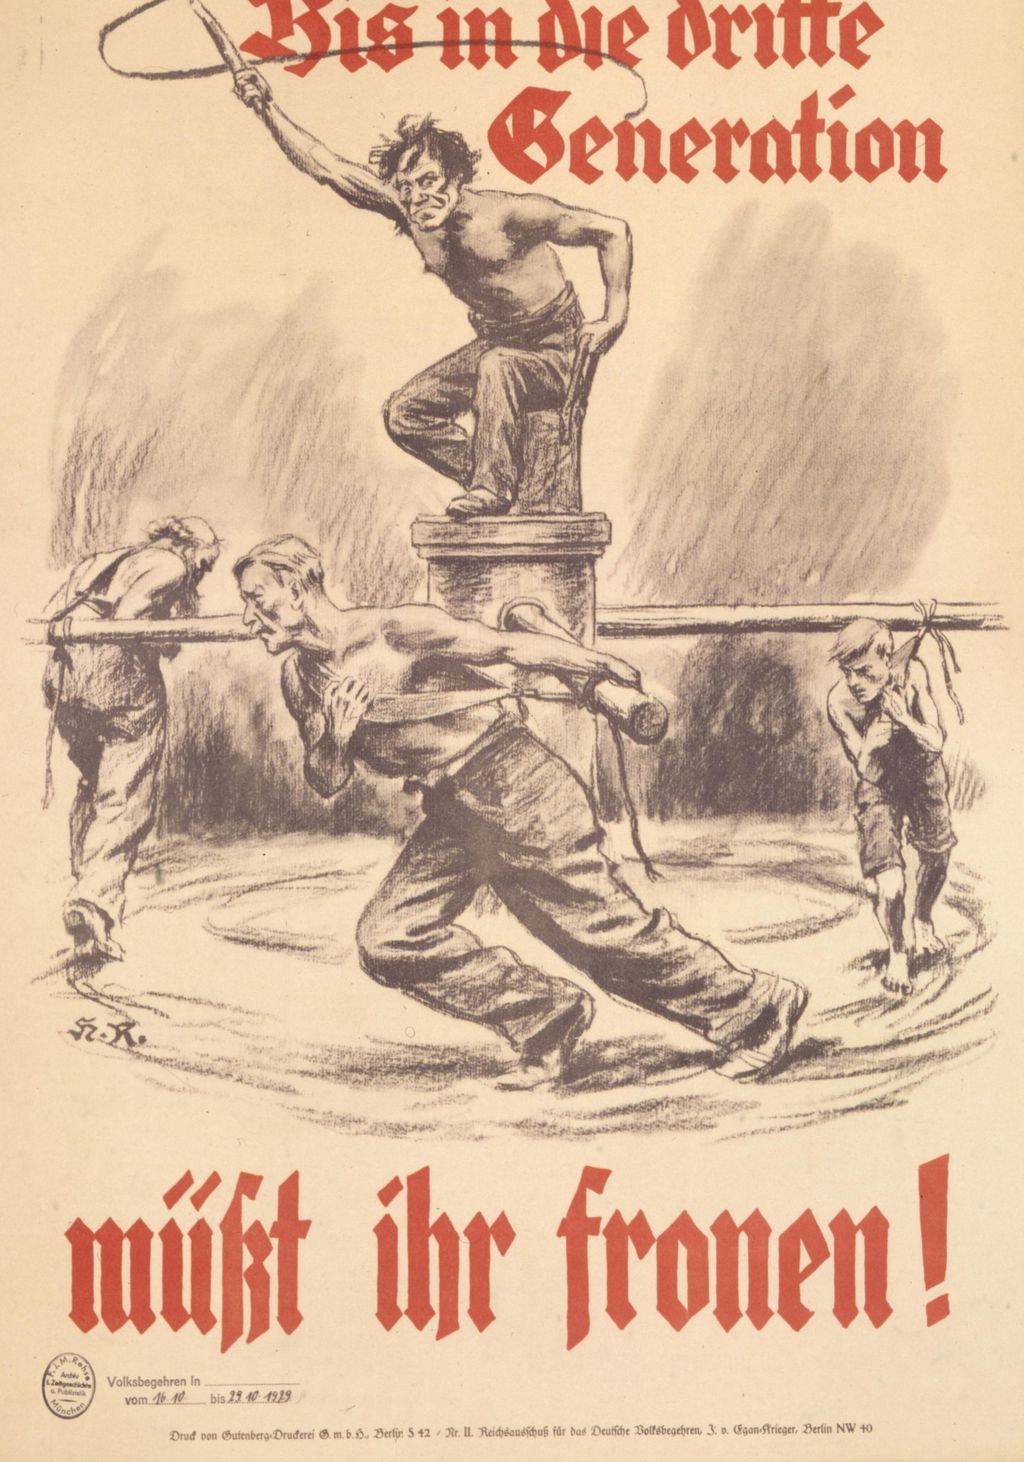 Exponat: Plakat: Rothgängel, Herbert "Bis in die dritte Generation müßt ihr fronen", 1929